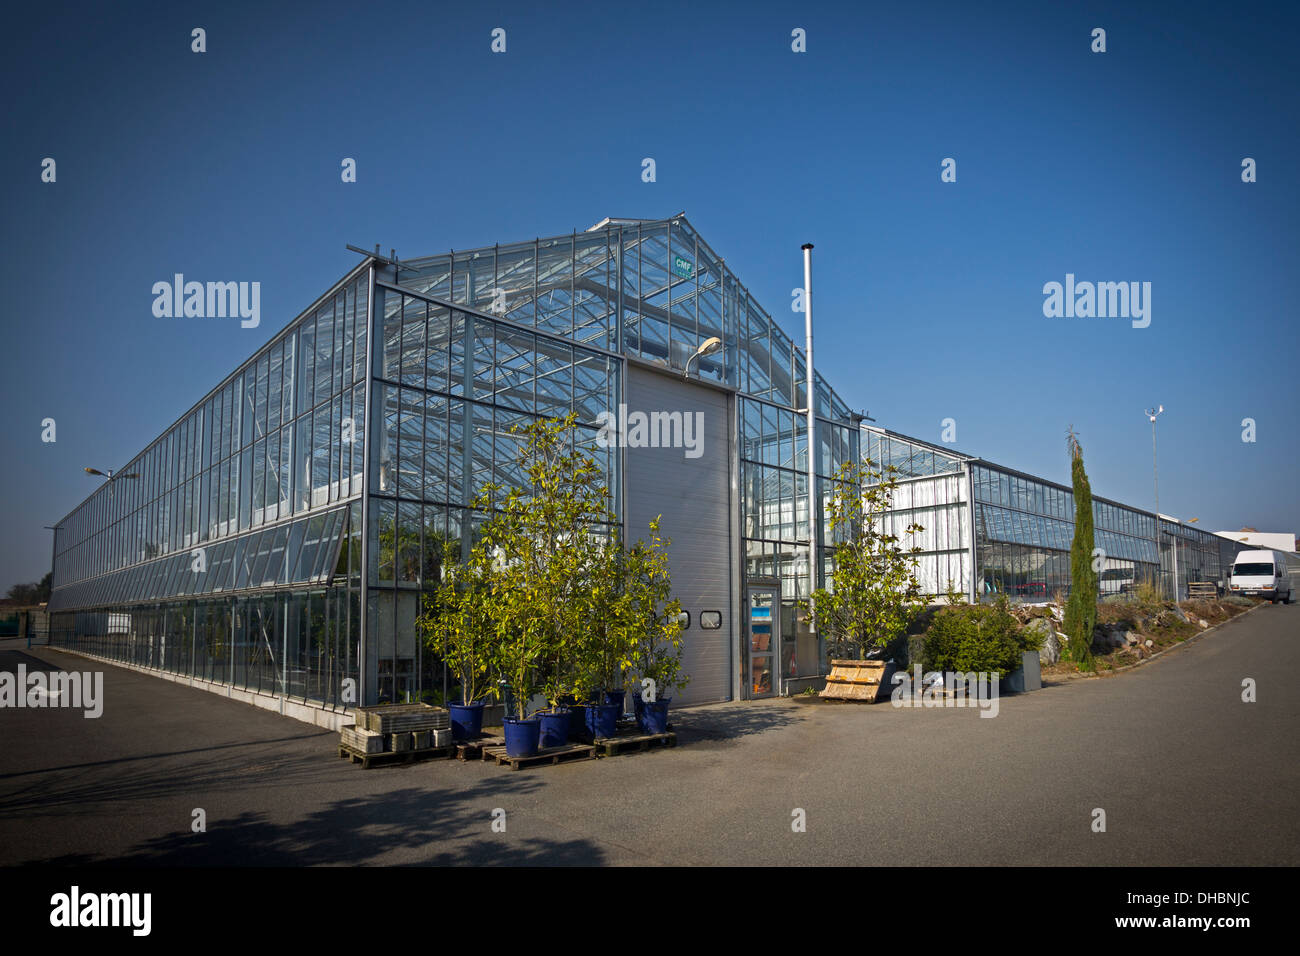 El invernadero del centro de rendimiento hortícola de Vichy (Francia). L'Orangerie du Centre de producción horticole de Vichy (Francia). Foto de stock